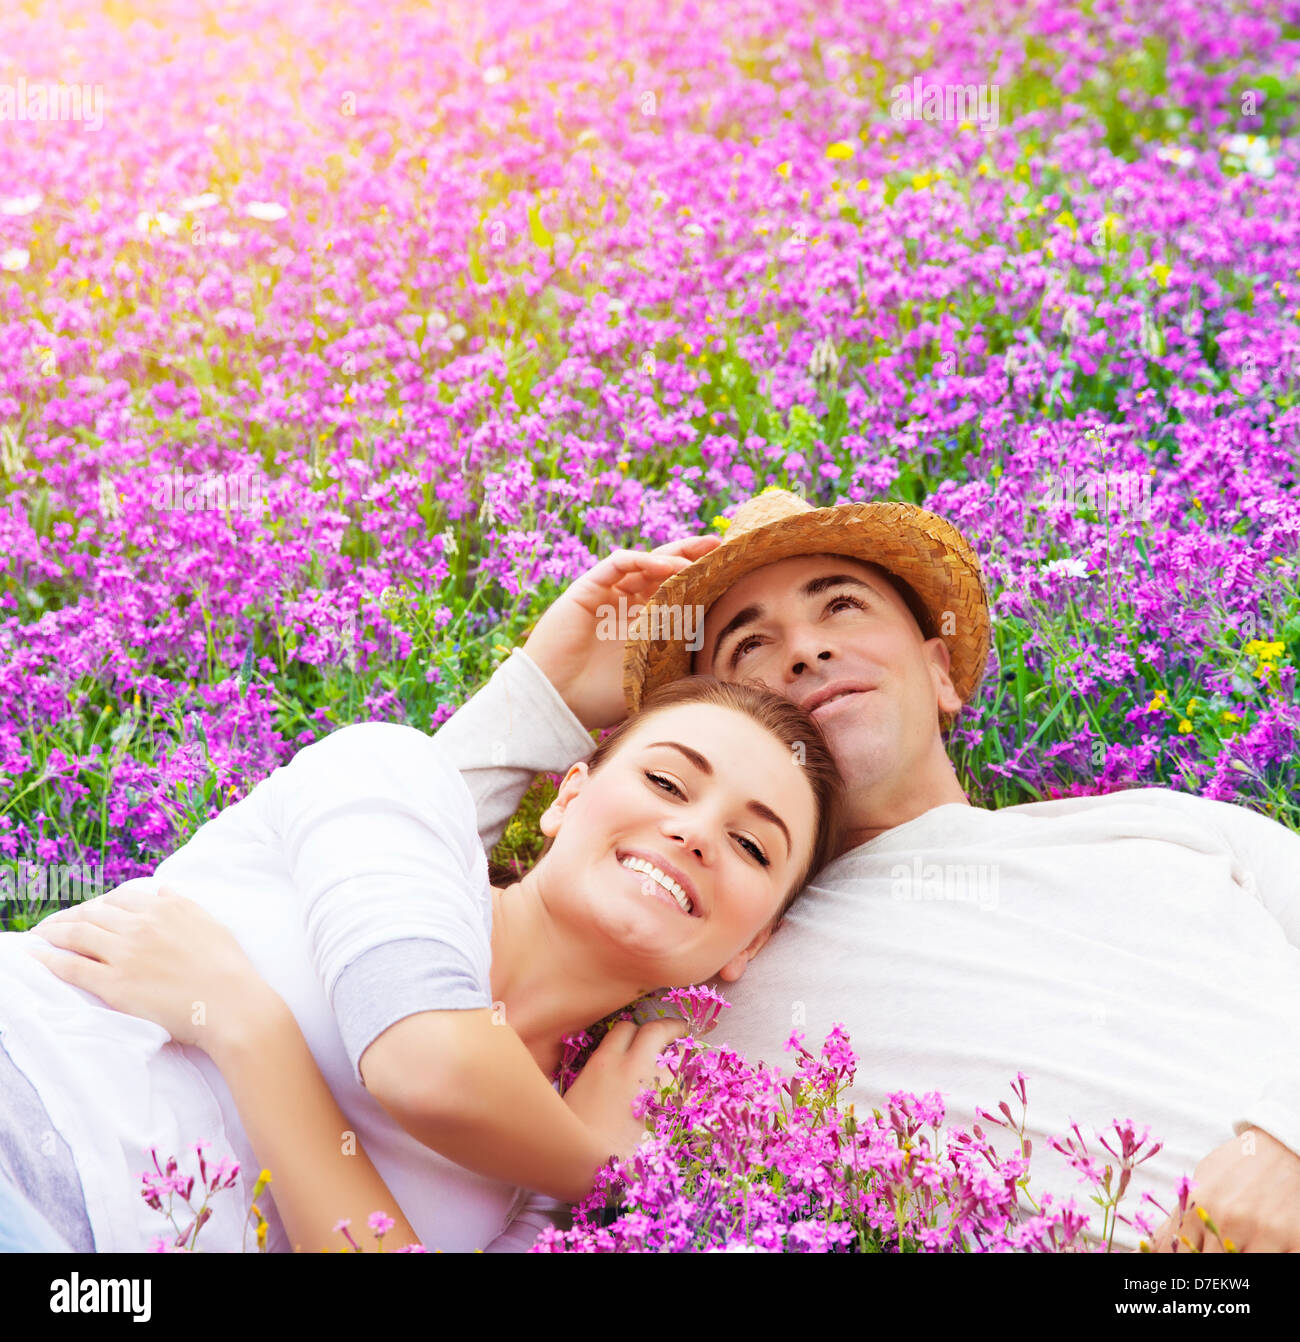 Junge Familienglück Festlegung auf frischem Lavendel Wiese, umarmen, Sommersaison, Natur, Romantik und Liebe Konzept Stockfoto